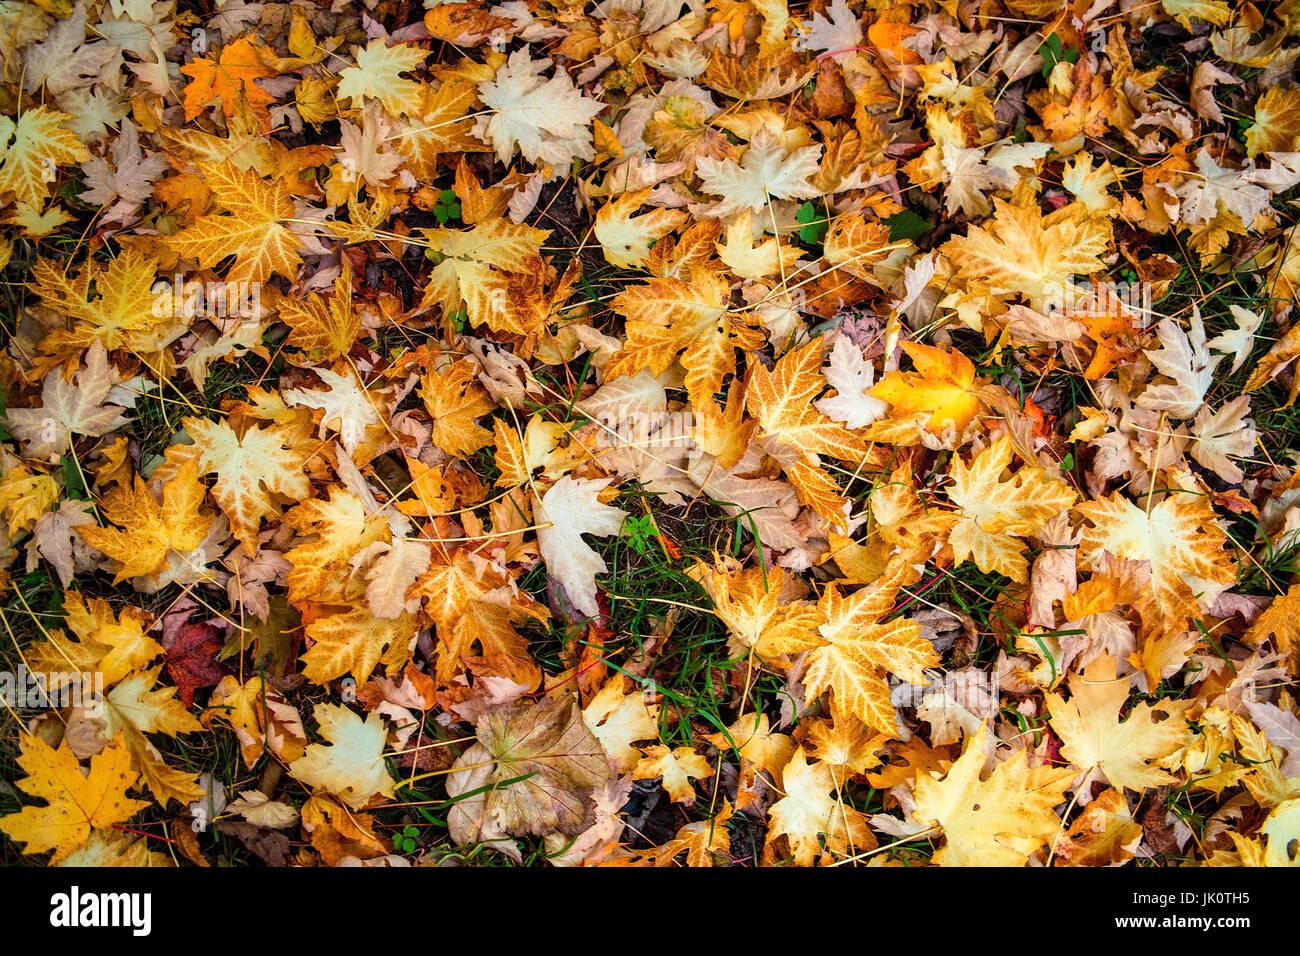 Feuilles d'érable sur le sol après la chute automnale des feuilles, am ahornblaetter laubfall herbstlichen nach dem boden Banque D'Images